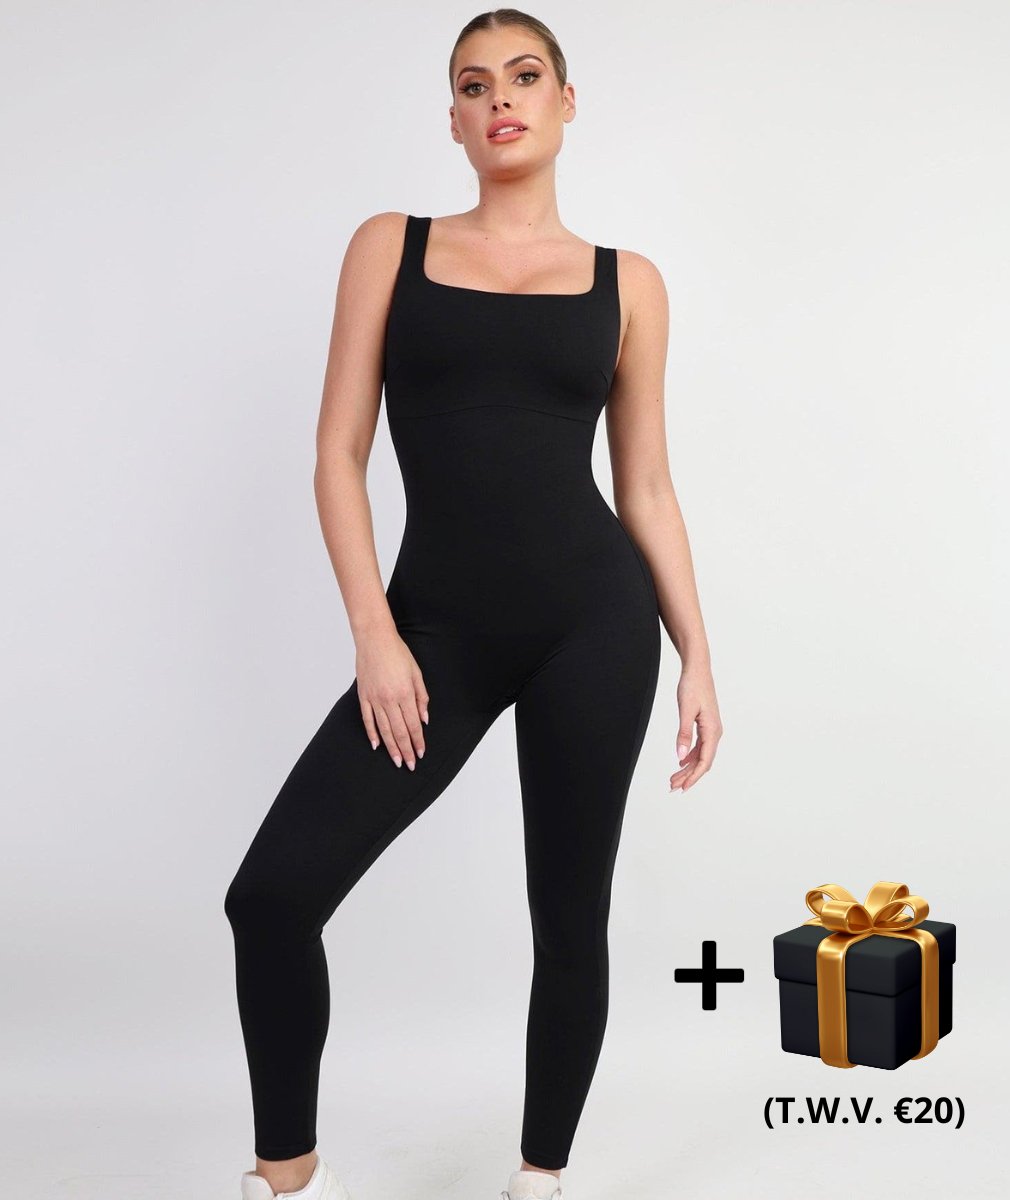 UMI® Jumpsuit - Comfy & Trendy Design - bellanza